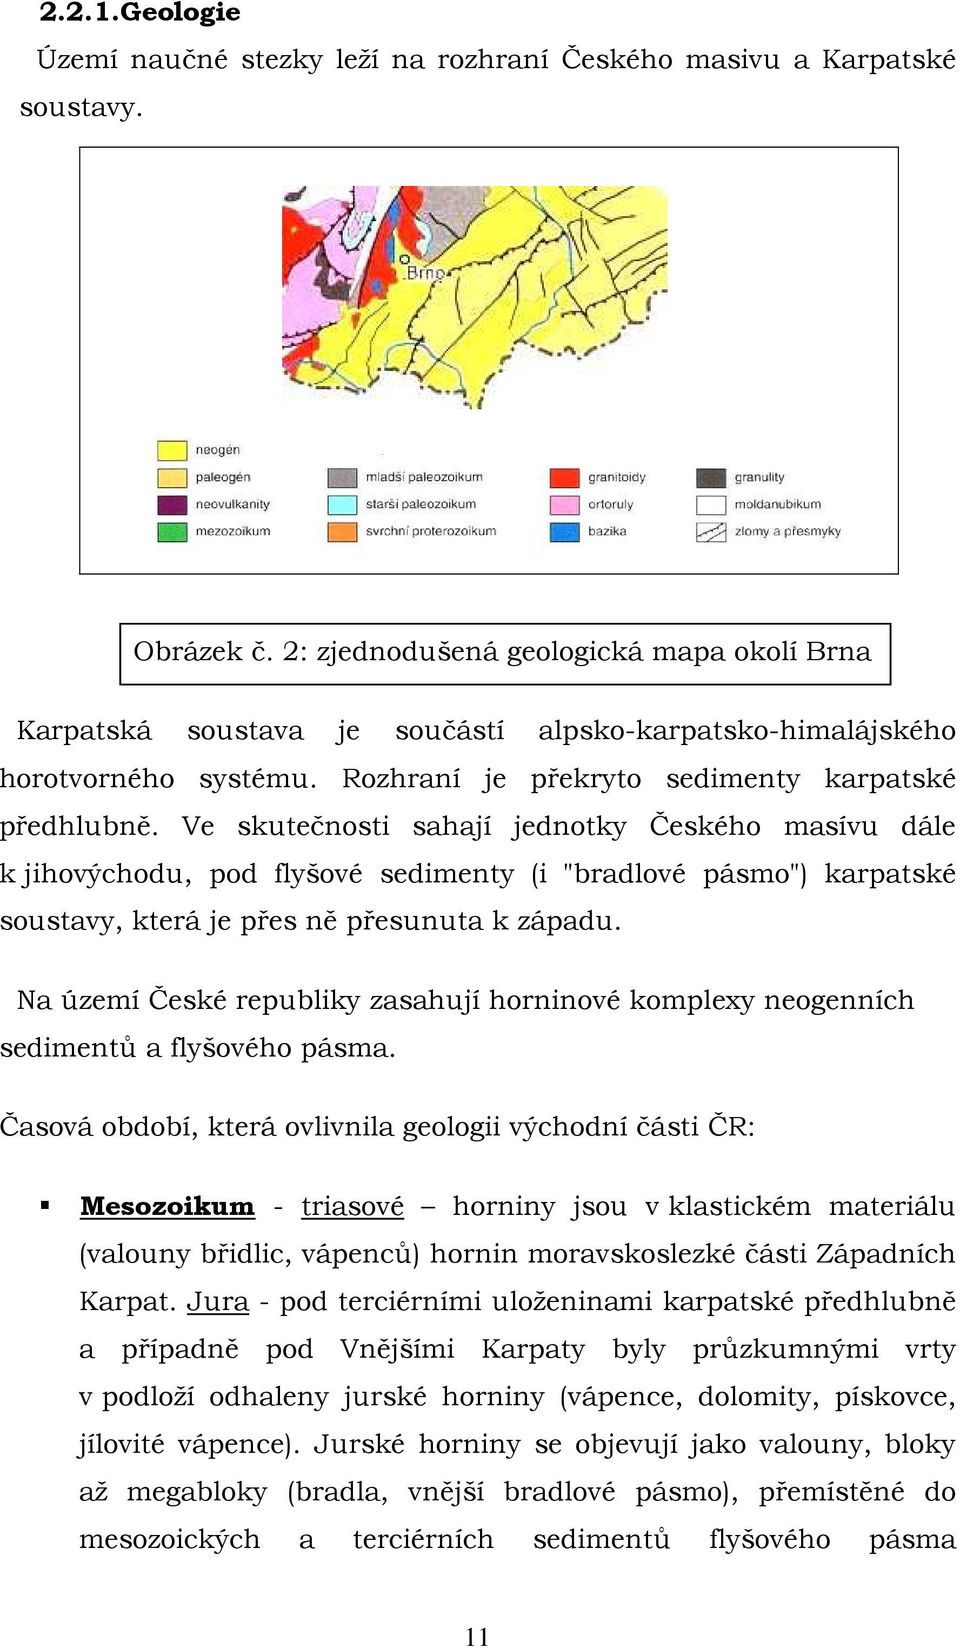 Ve skutečnosti sahají jednotky Českého masívu dále k jihovýchodu, pod flyšové sedimenty (i "bradlové pásmo") karpatské soustavy, která je přes ně přesunuta k západu.